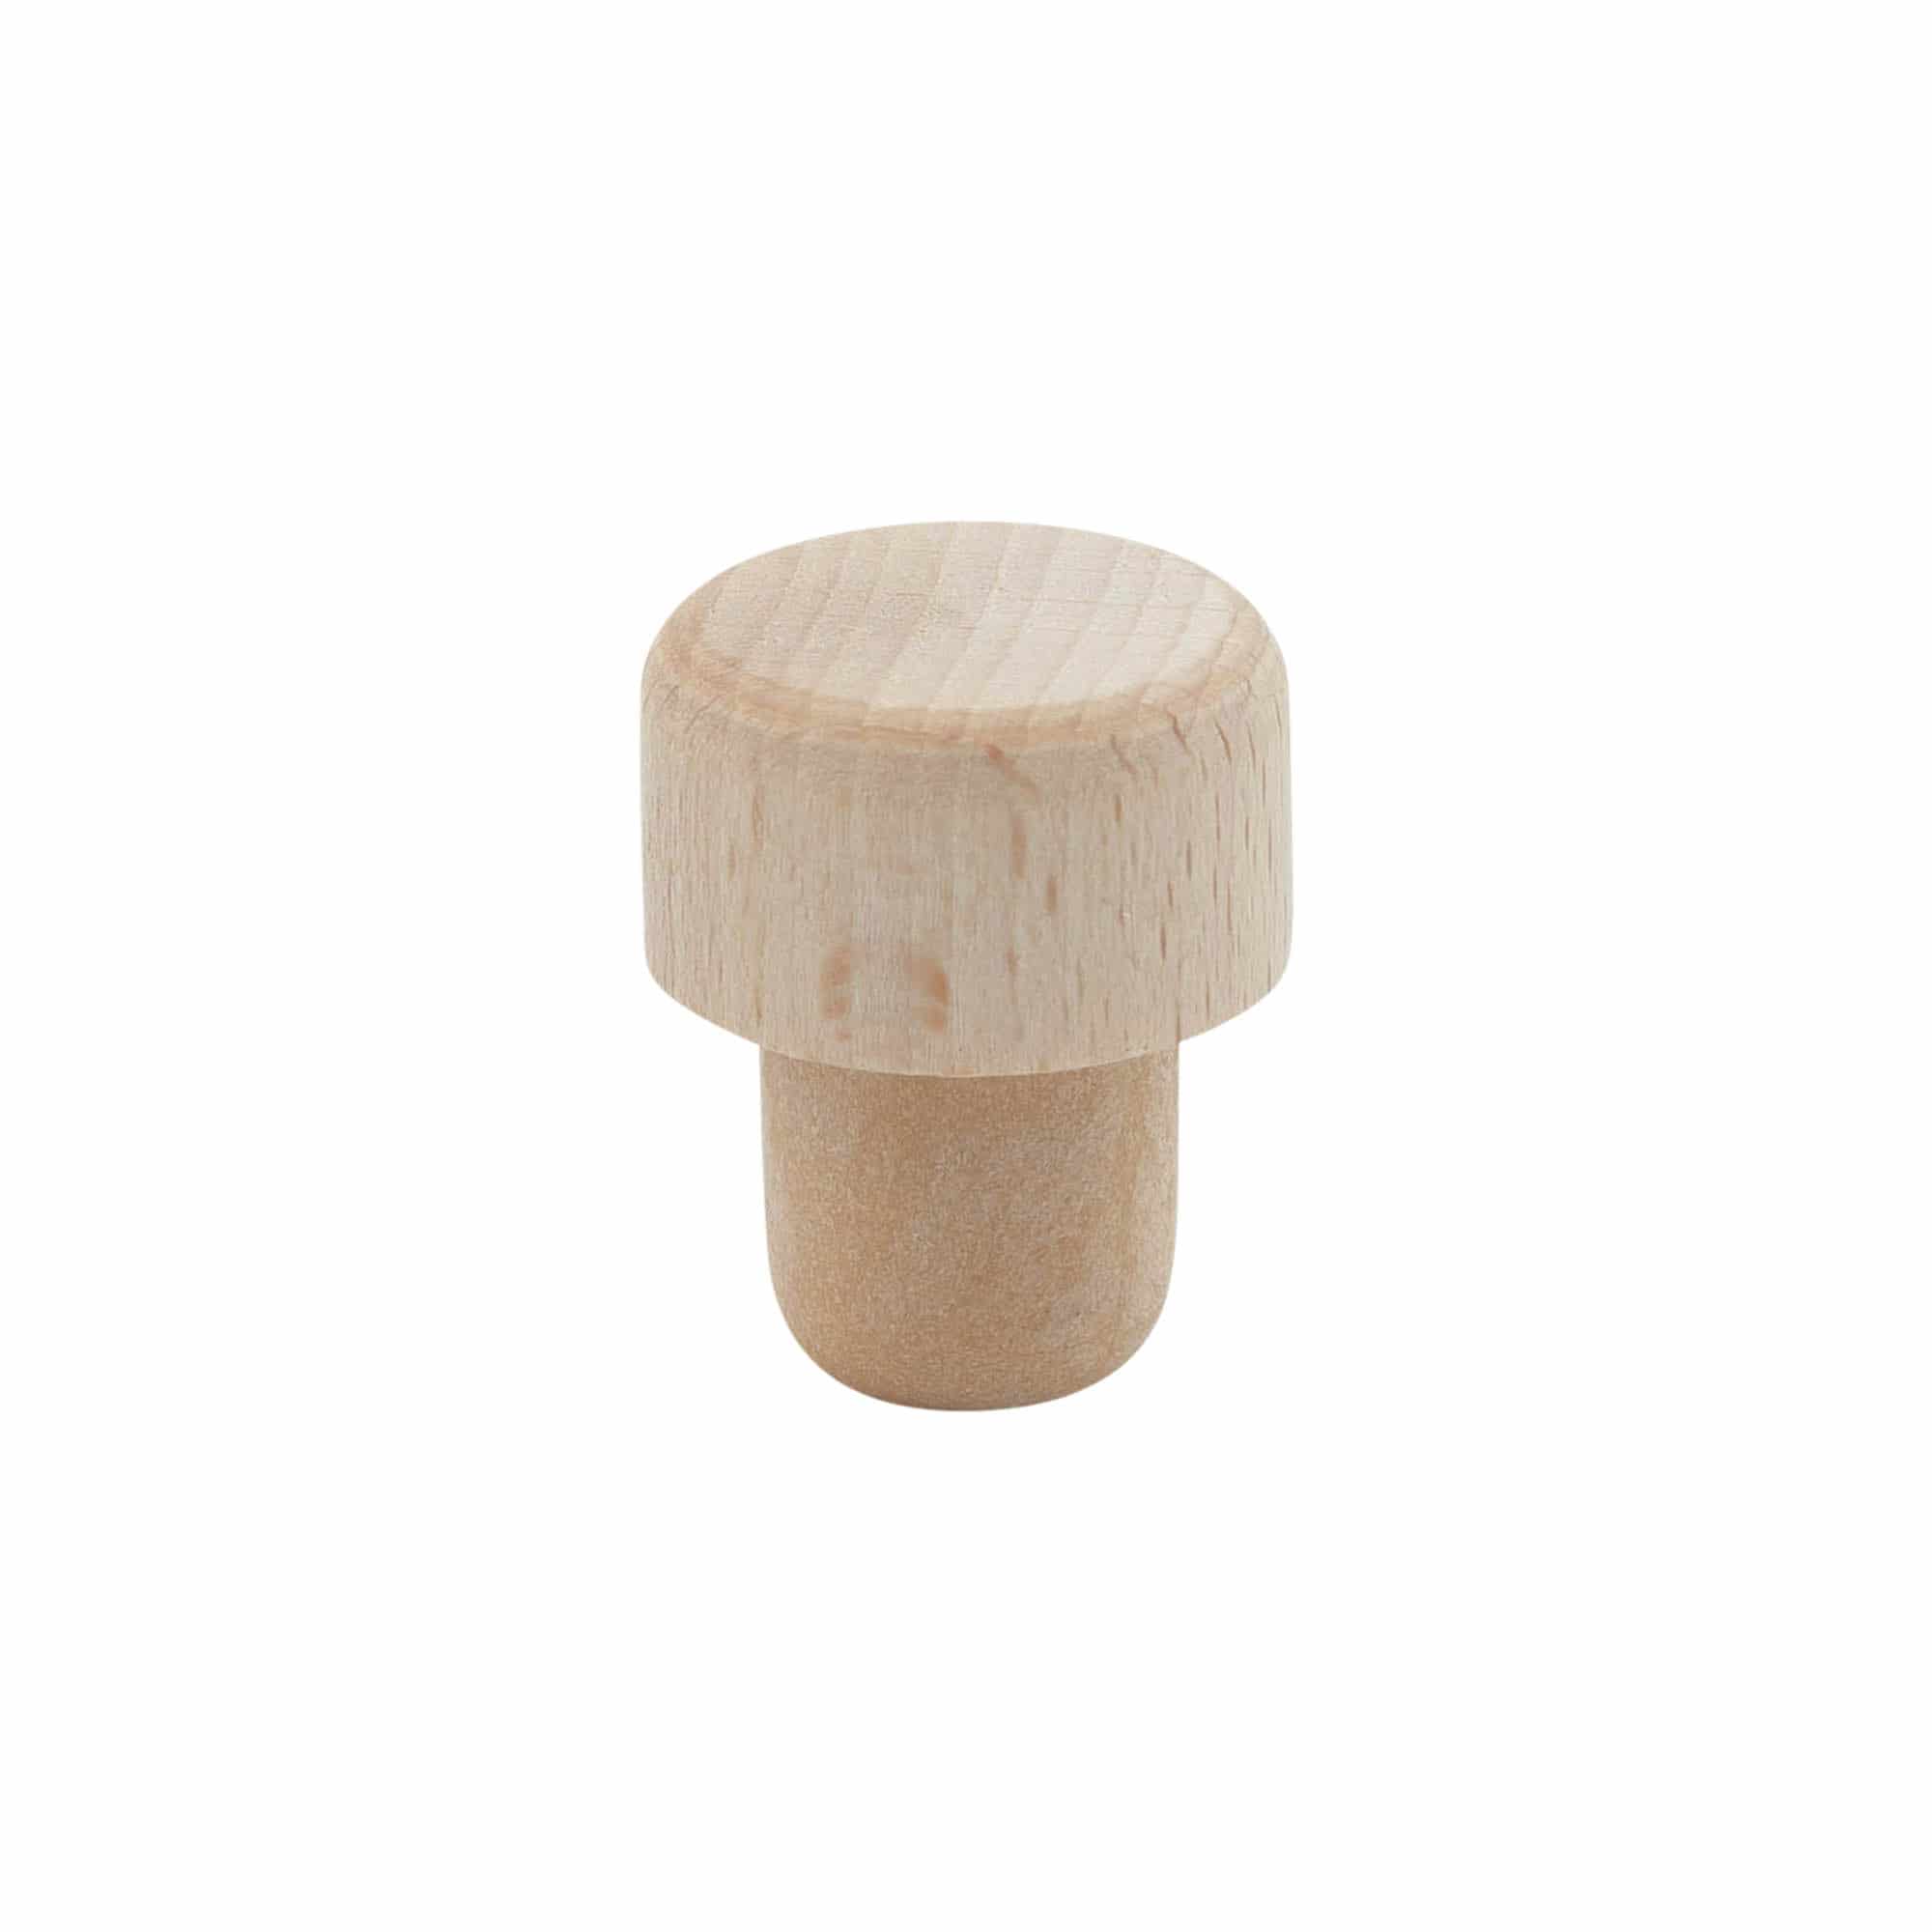 Griffkorken mit Dosieröffnung 19 mm, Kunststoff-Holz, beige, für Mündung: Kork